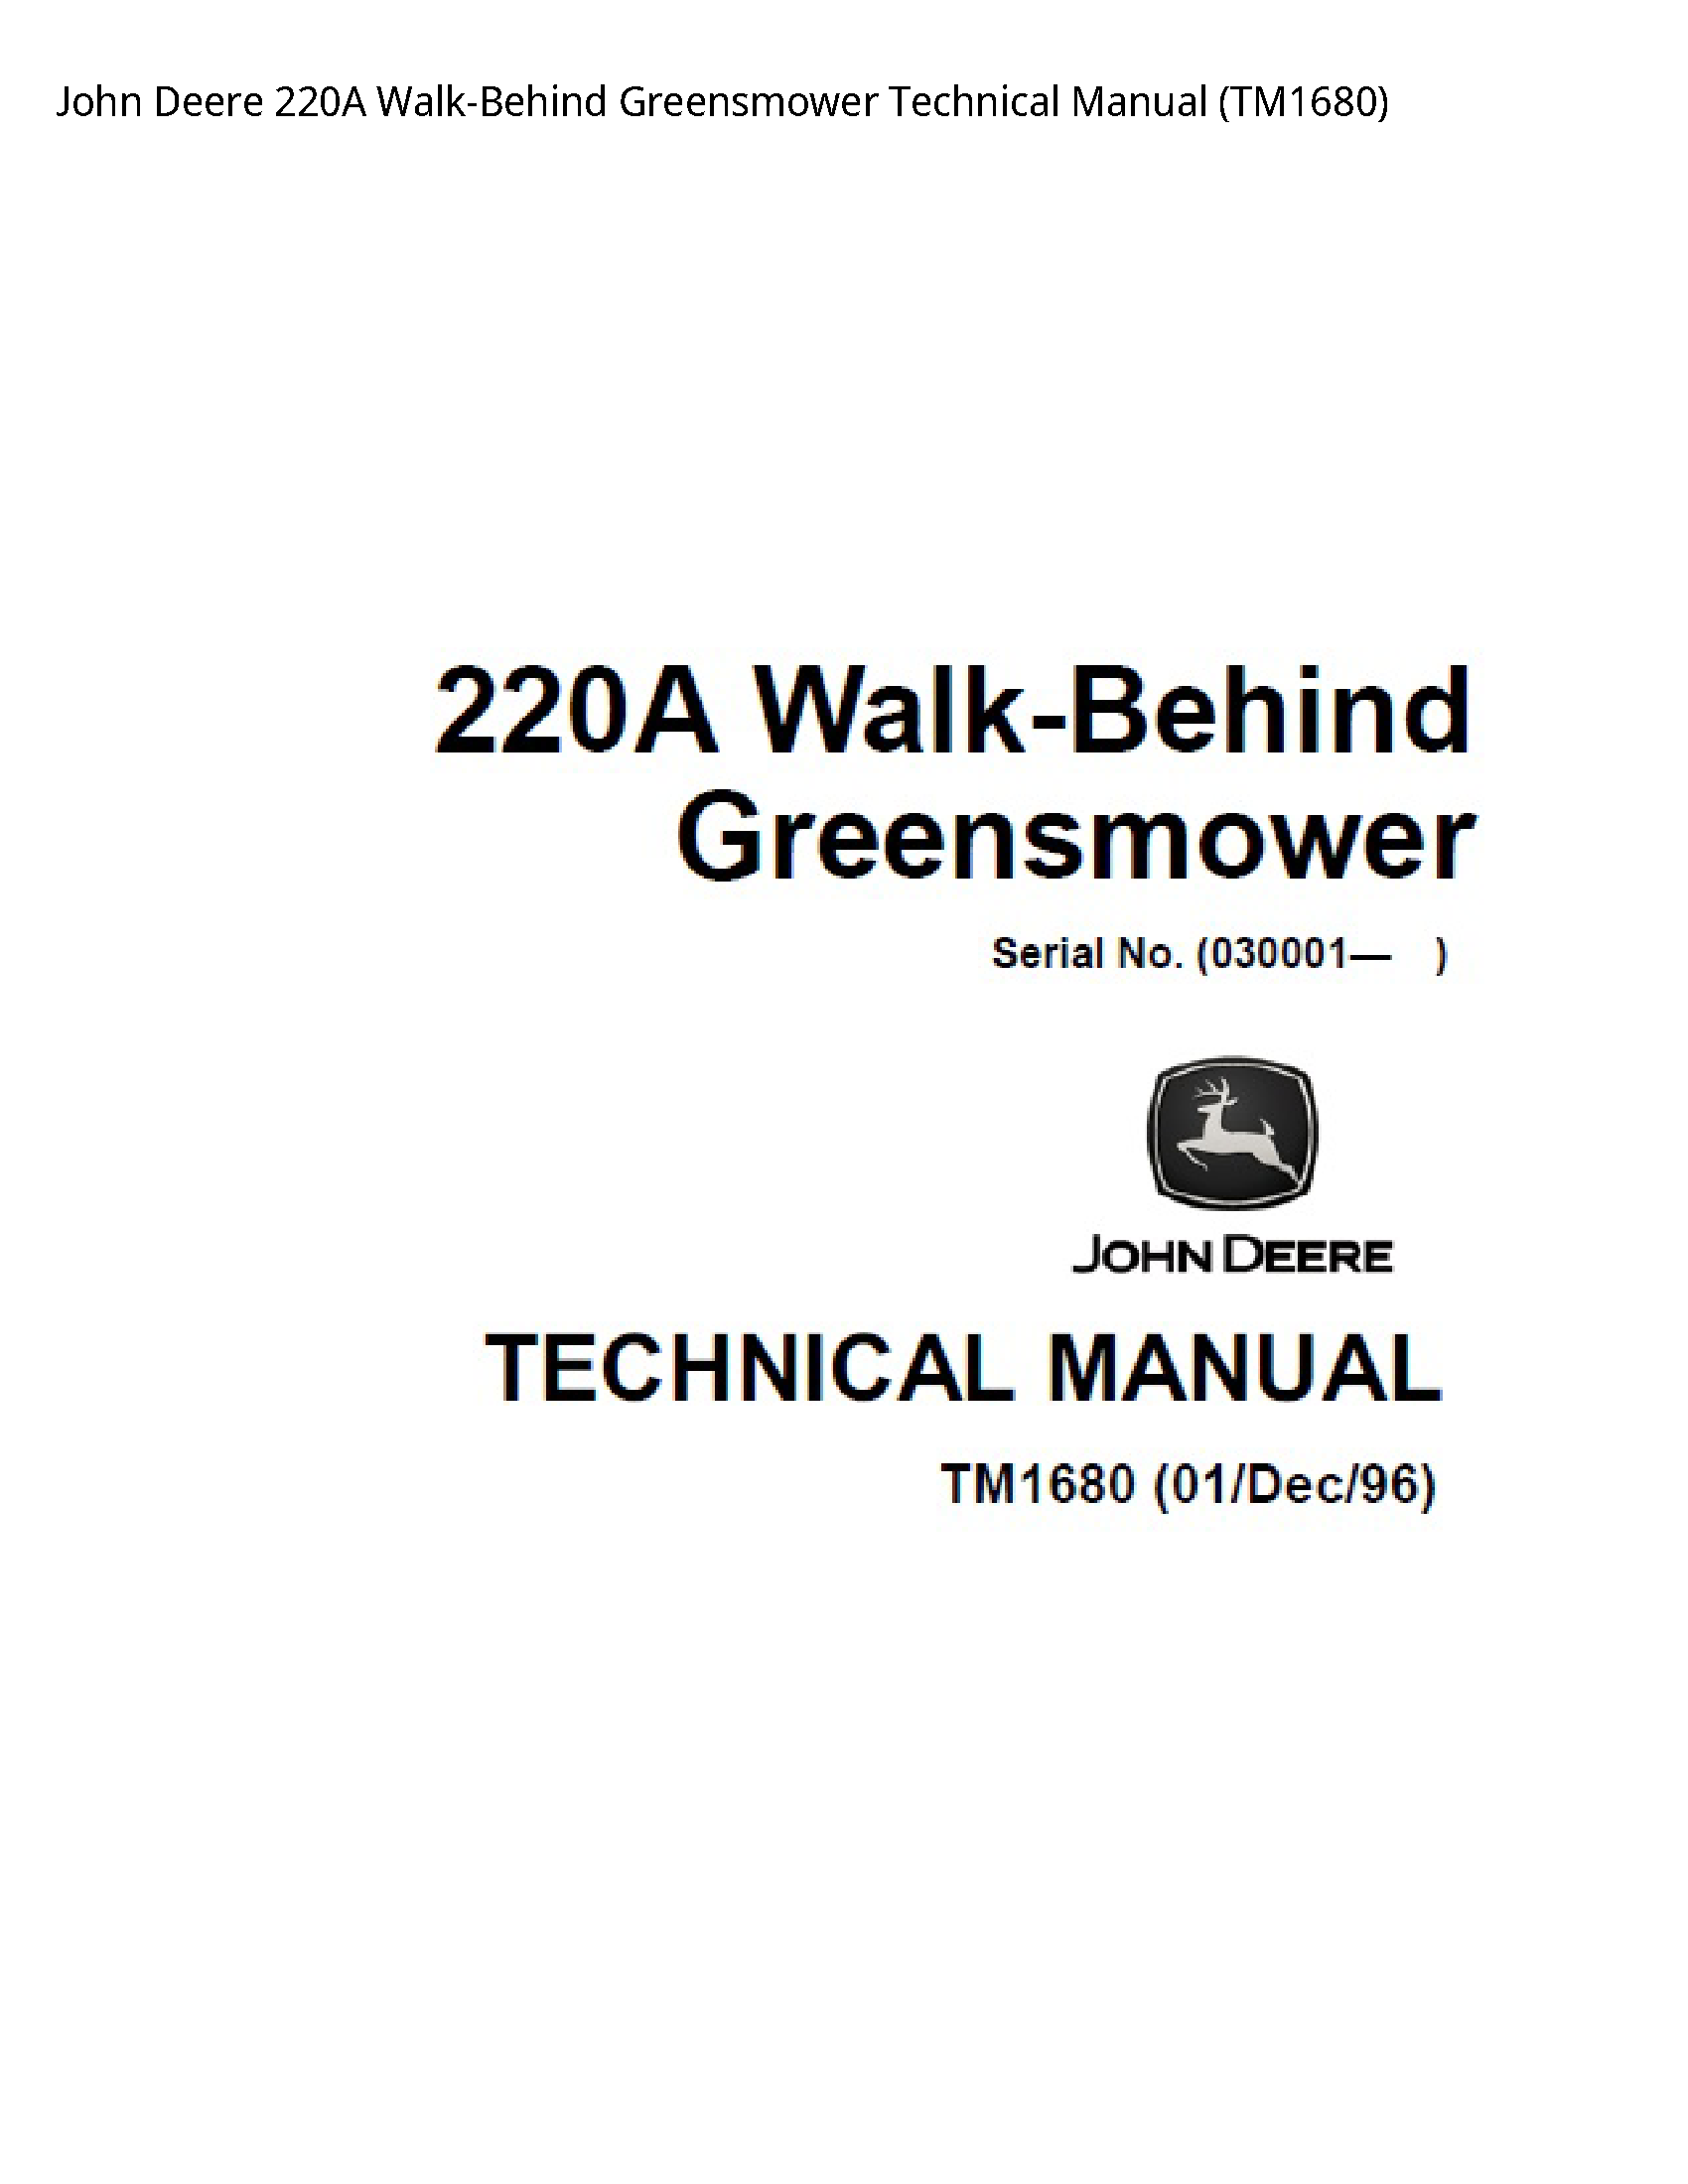 John Deere 220A Walk-Behind Greensmower Technical manual